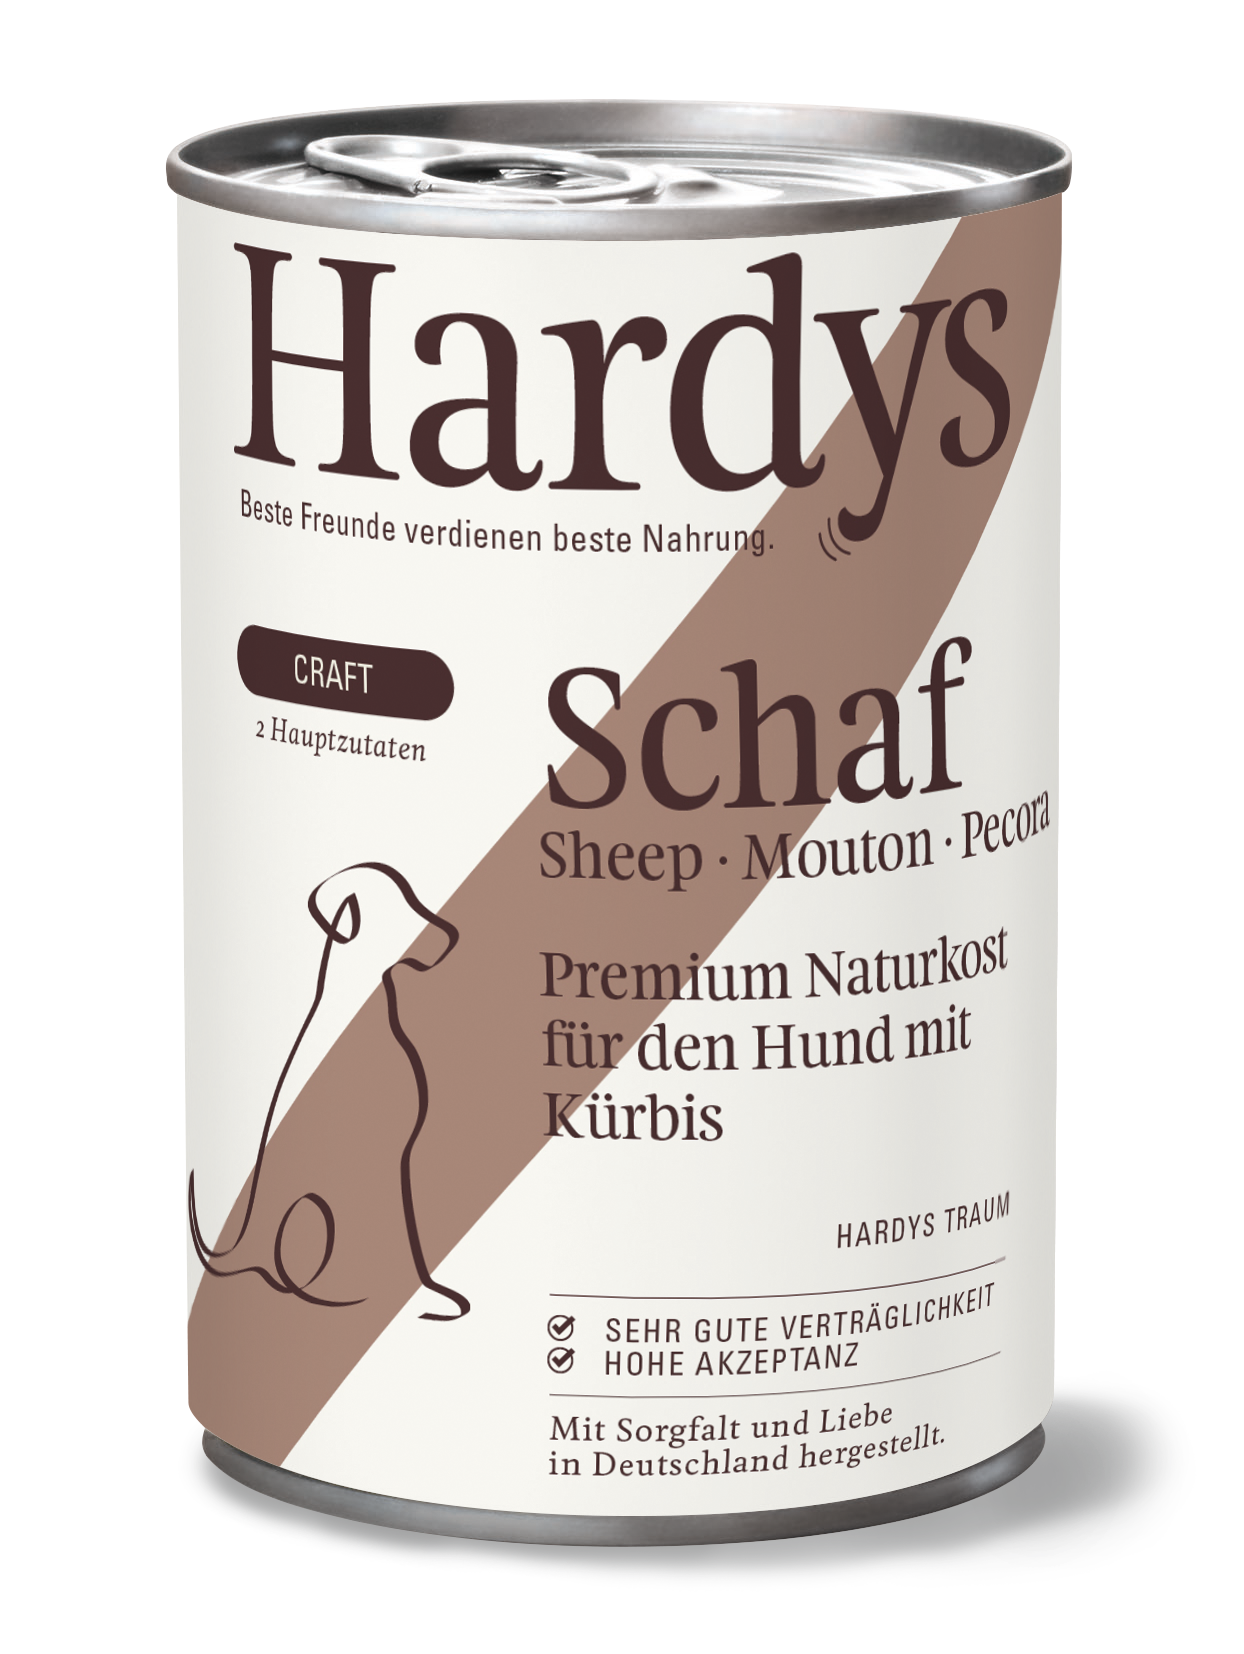 Hardys Craft Schaf mit Kürbis, 400 g